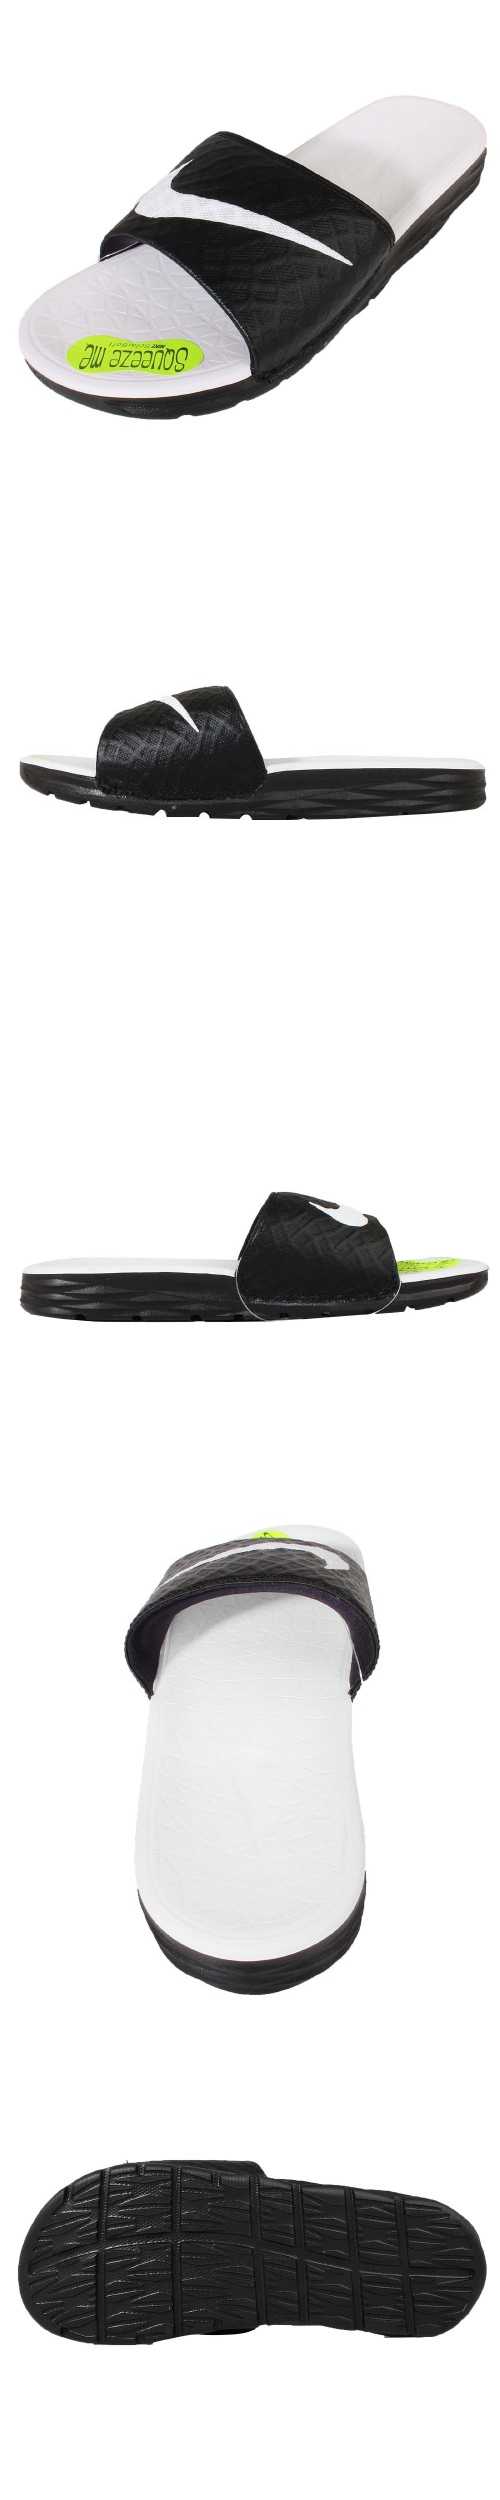 拖鞋 Nike Benassi Solarsoft 黑 白 男 女